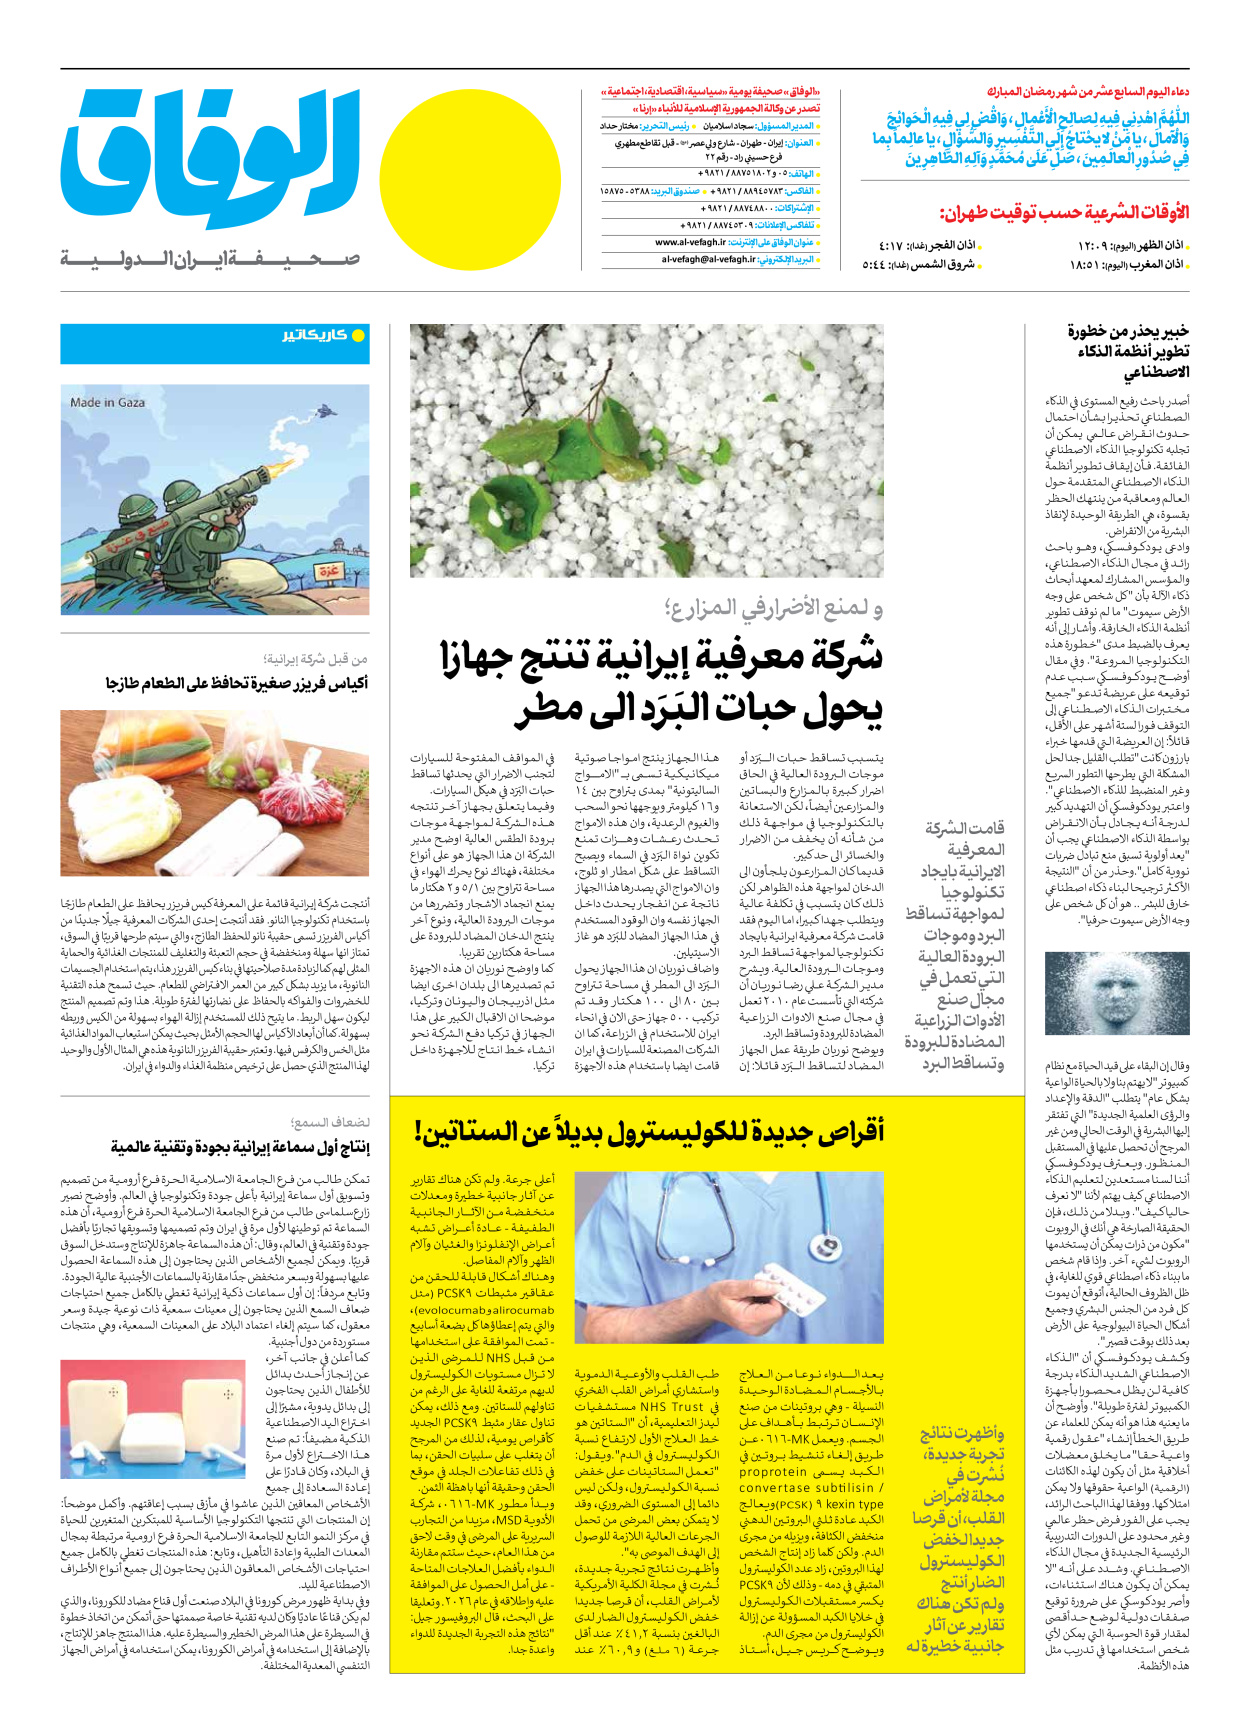 صحیفة ایران الدولیة الوفاق - العدد سبعة آلاف ومائتان وثمانية - ٠٨ أبريل ٢٠٢٣ - الصفحة ۱۲